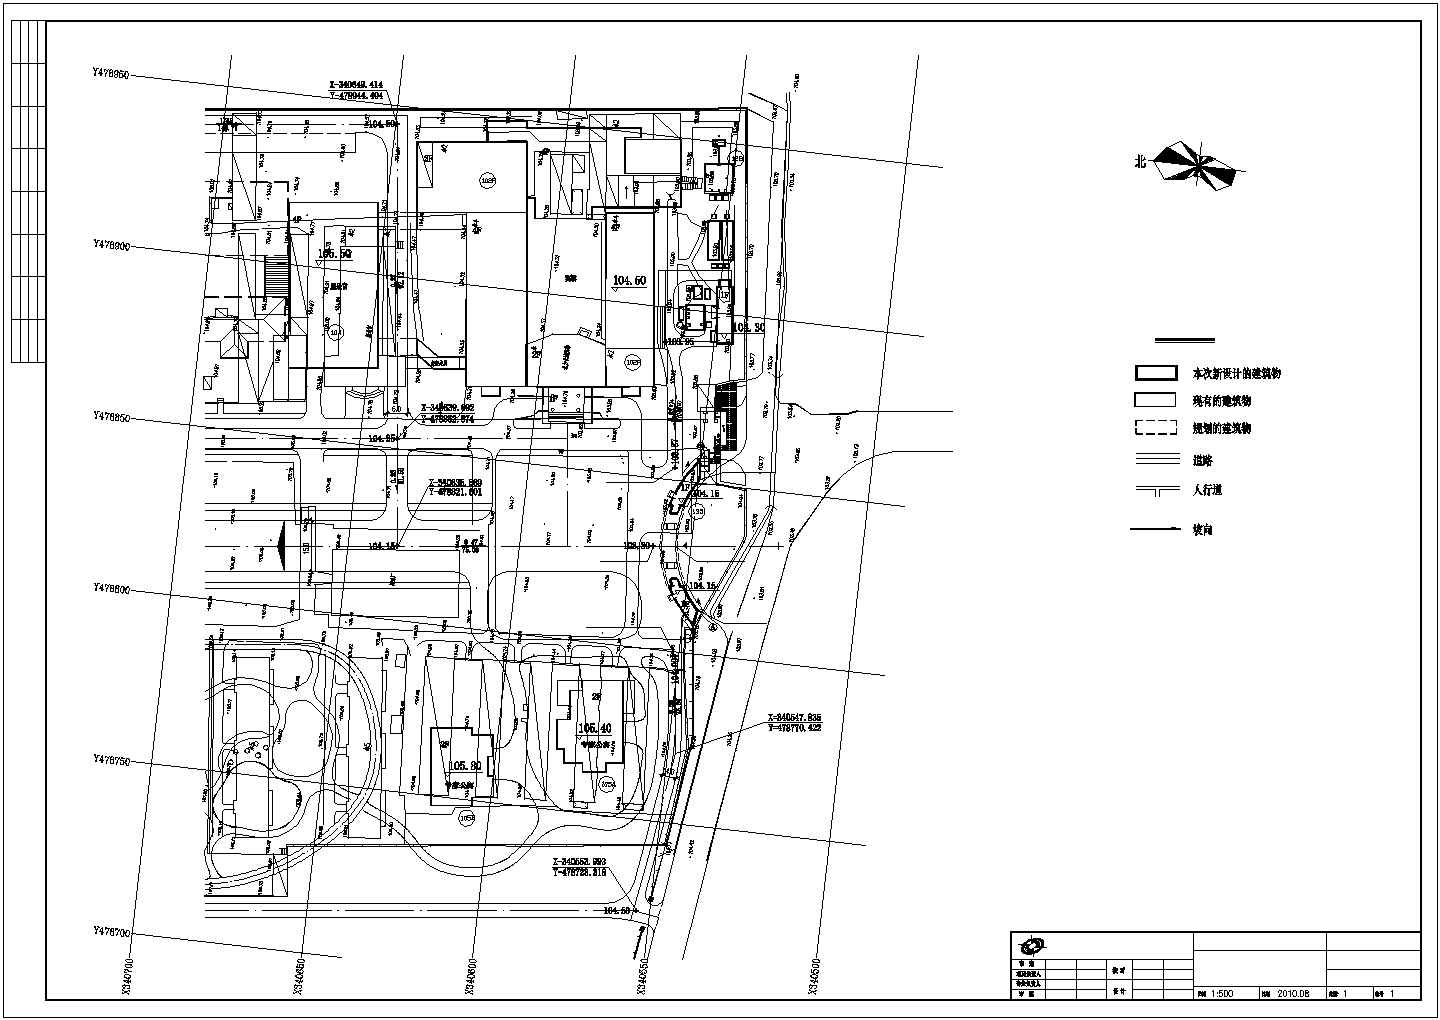 北京市马房村框架结构大门及警卫室建筑设计施工图